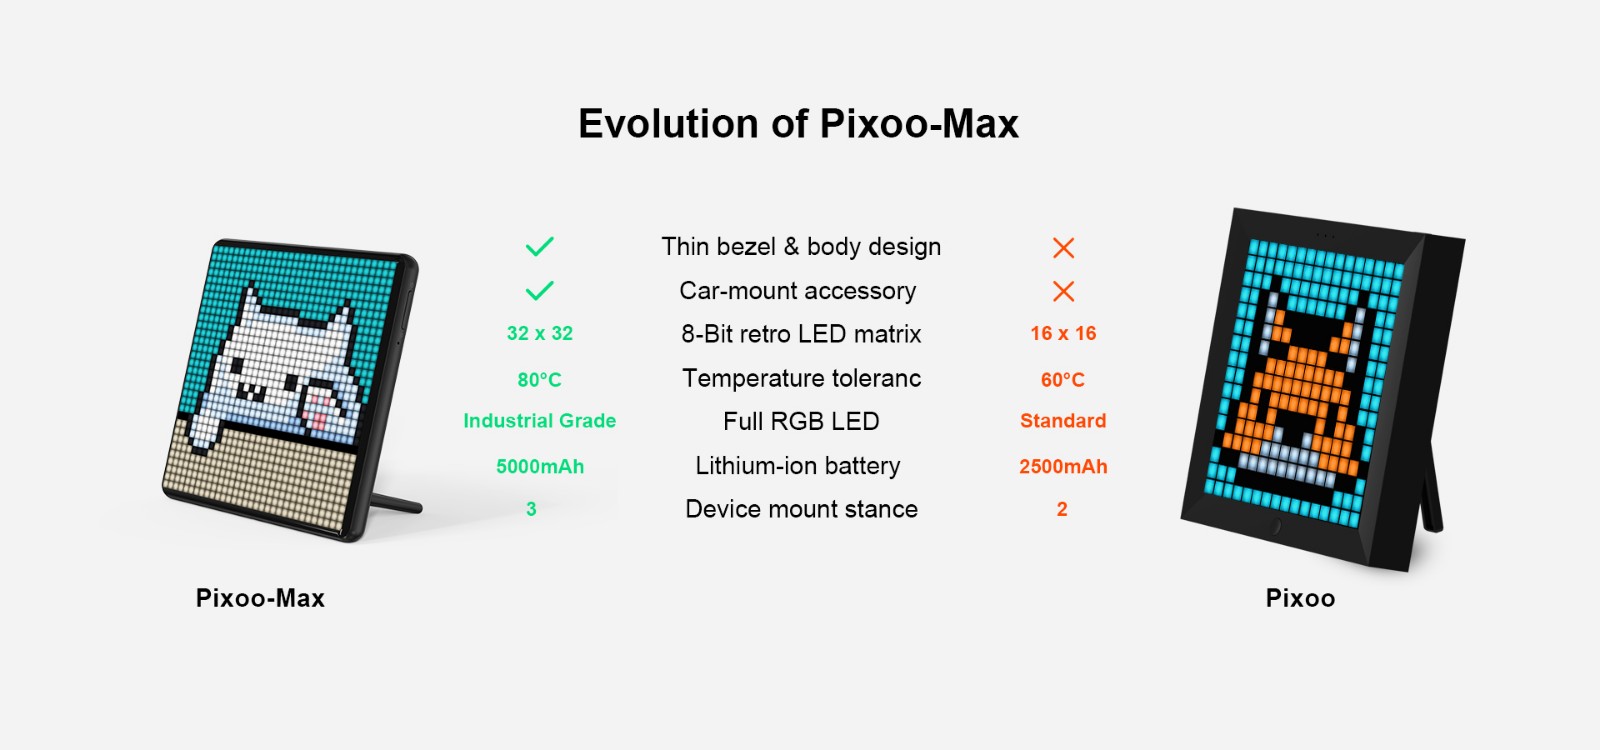 divoom_pixoo_max_vs_divoom_pixoo